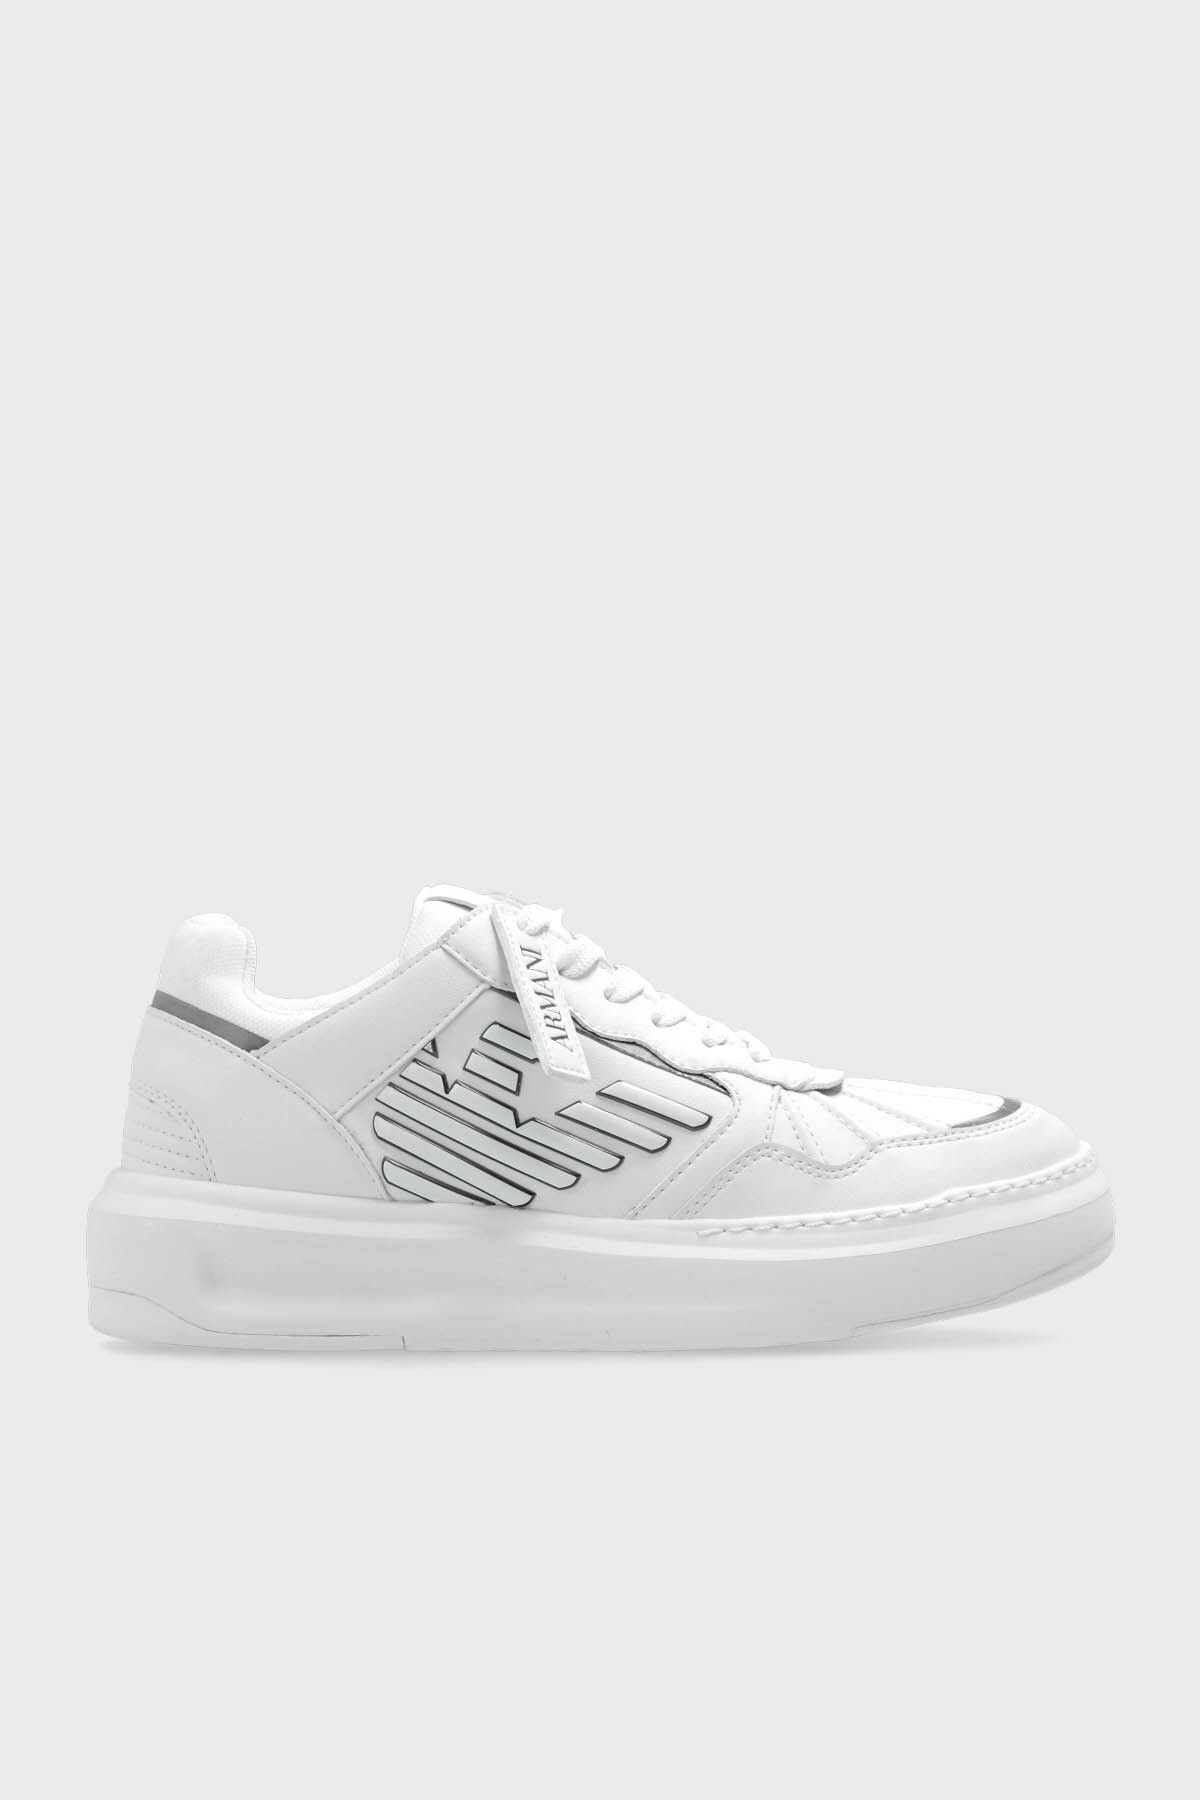 Emporio Armani Logolu Deri Sneaker Ayakkabı  AYAKKABI X3X165 XR107 C662